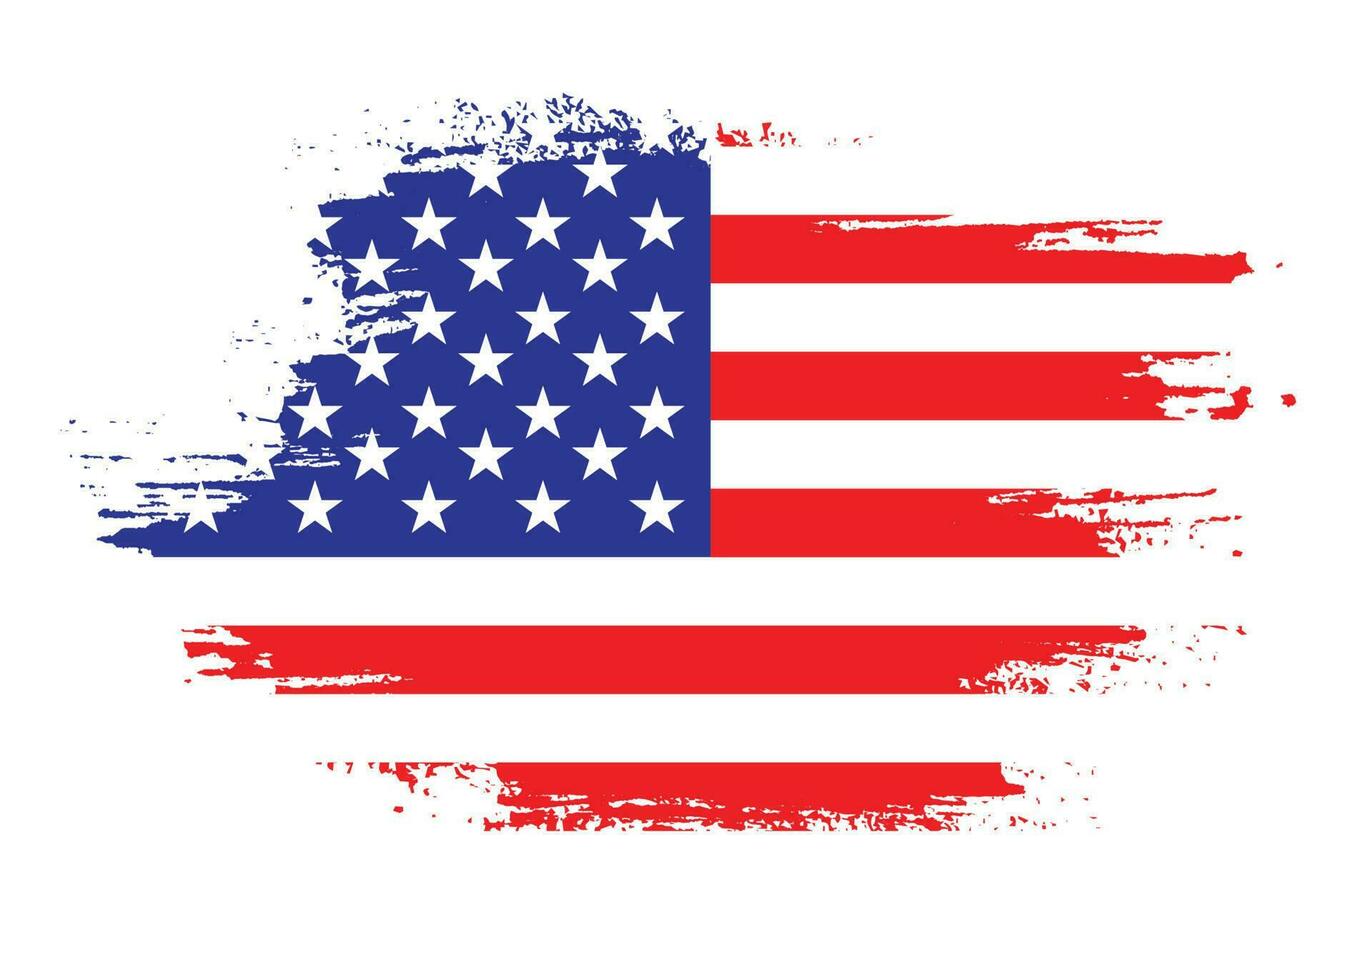 professioneel hand- verf Verenigde Staten van Amerika vlag vector